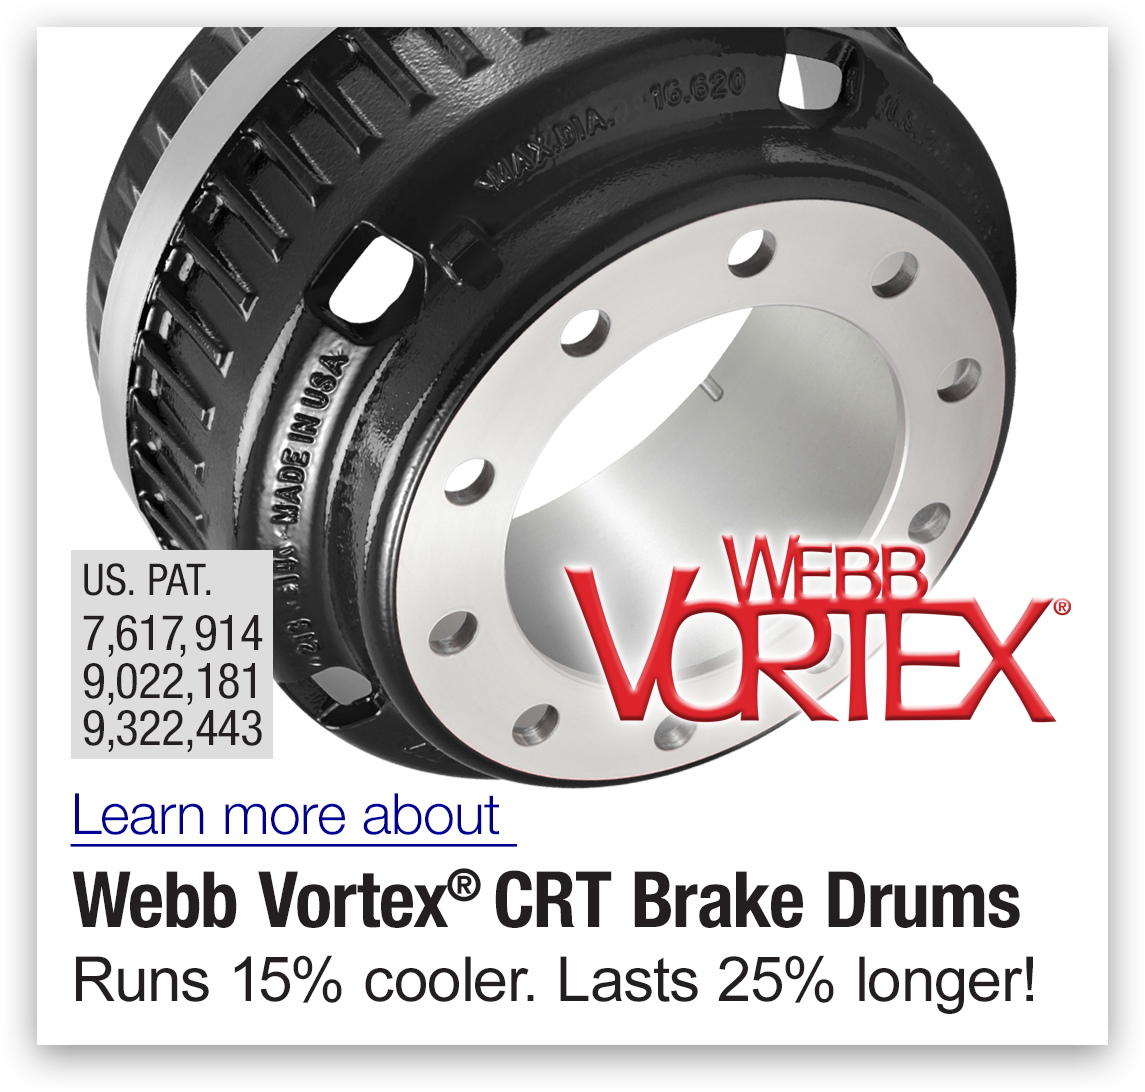 Webb Vortex brake drums